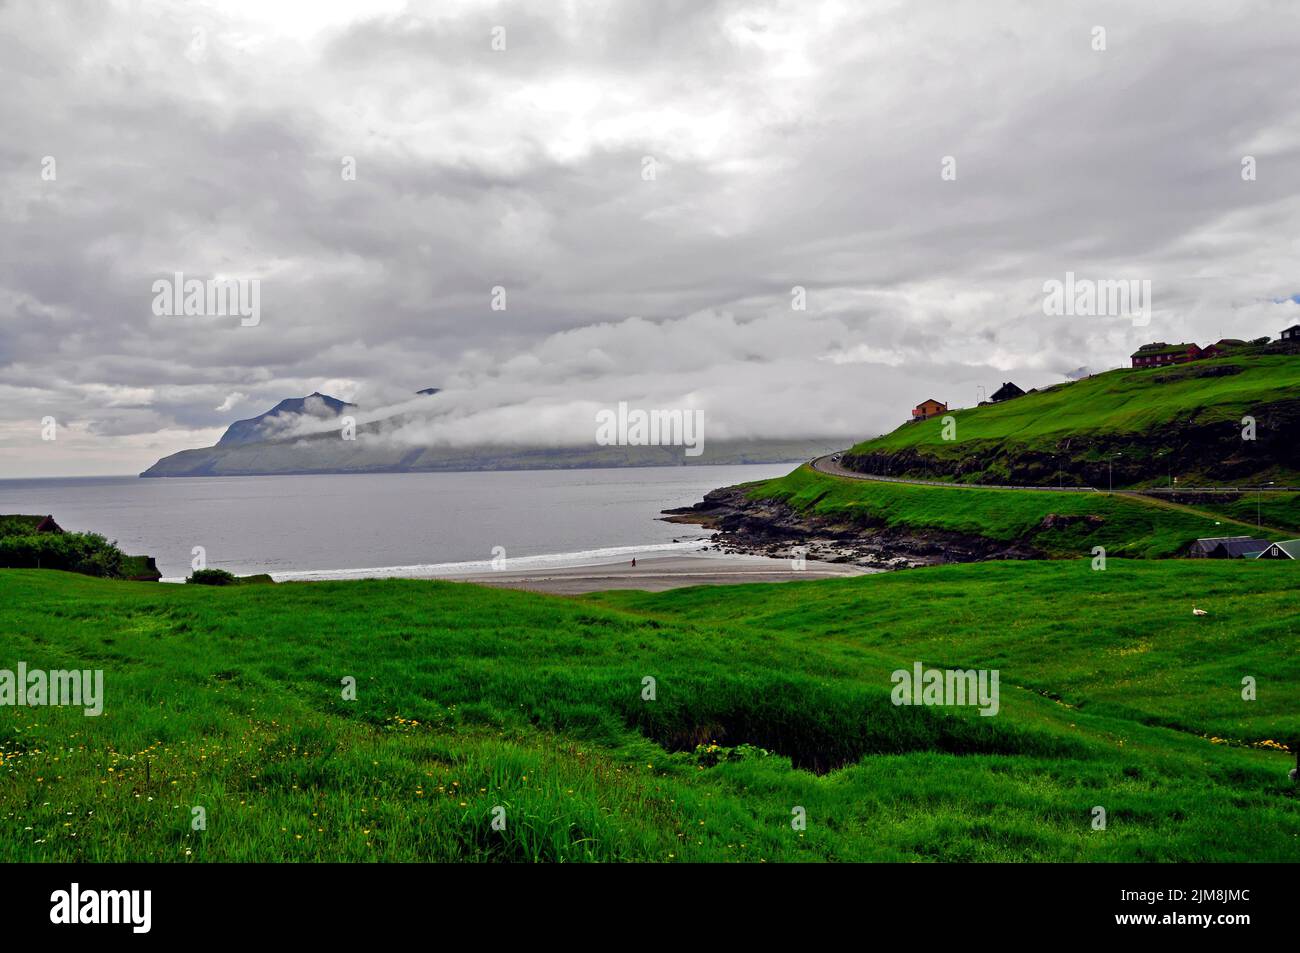 Typisches Landschaftsbild auf der Hauptinsel Strey Foto Stock